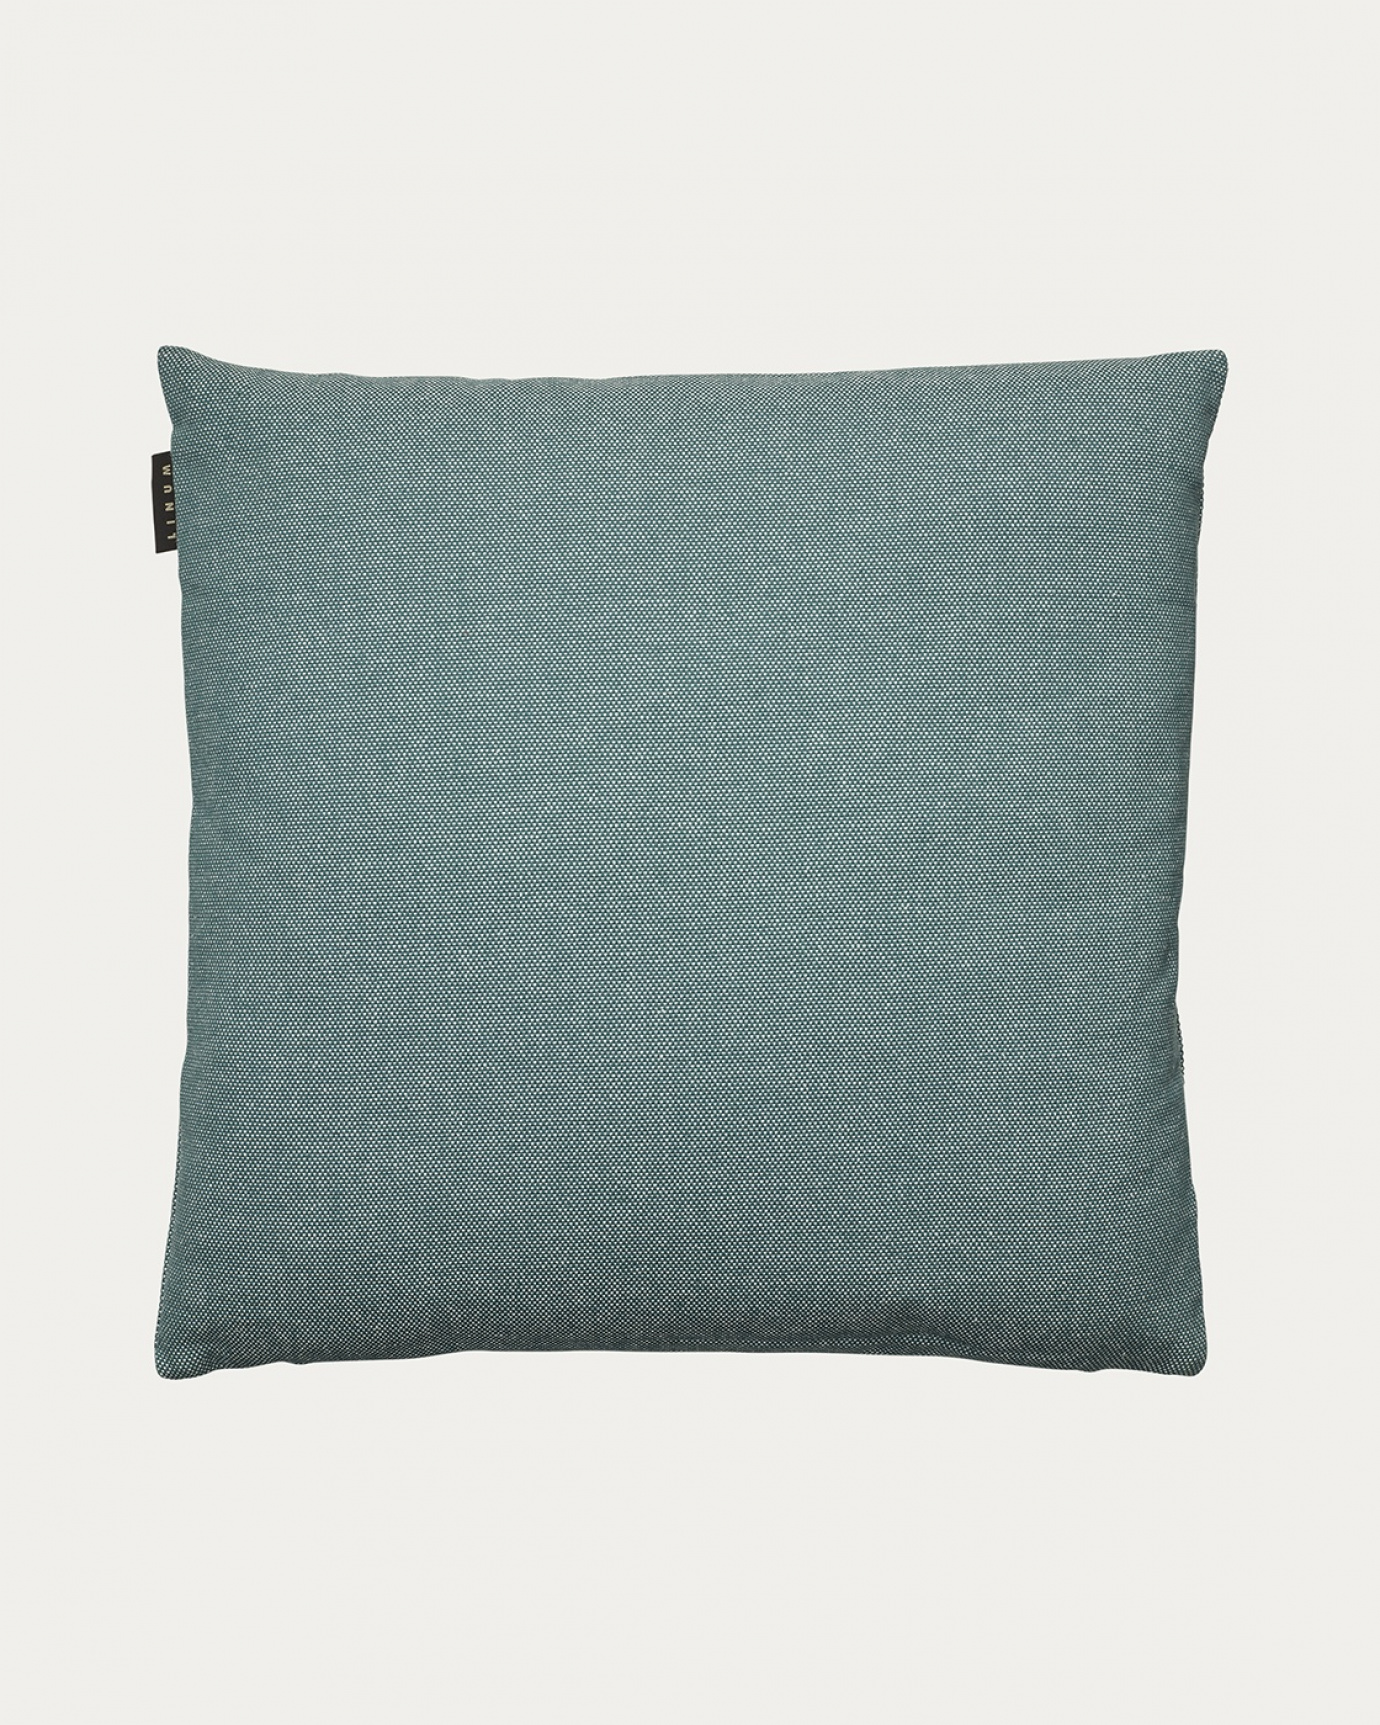 Image du produit housse de coussin PEPPER gris foncé turquoise en coton doux de LINUM DESIGN. Facile à laver et durable pendant des générations. Taille 50 x 50 cm.